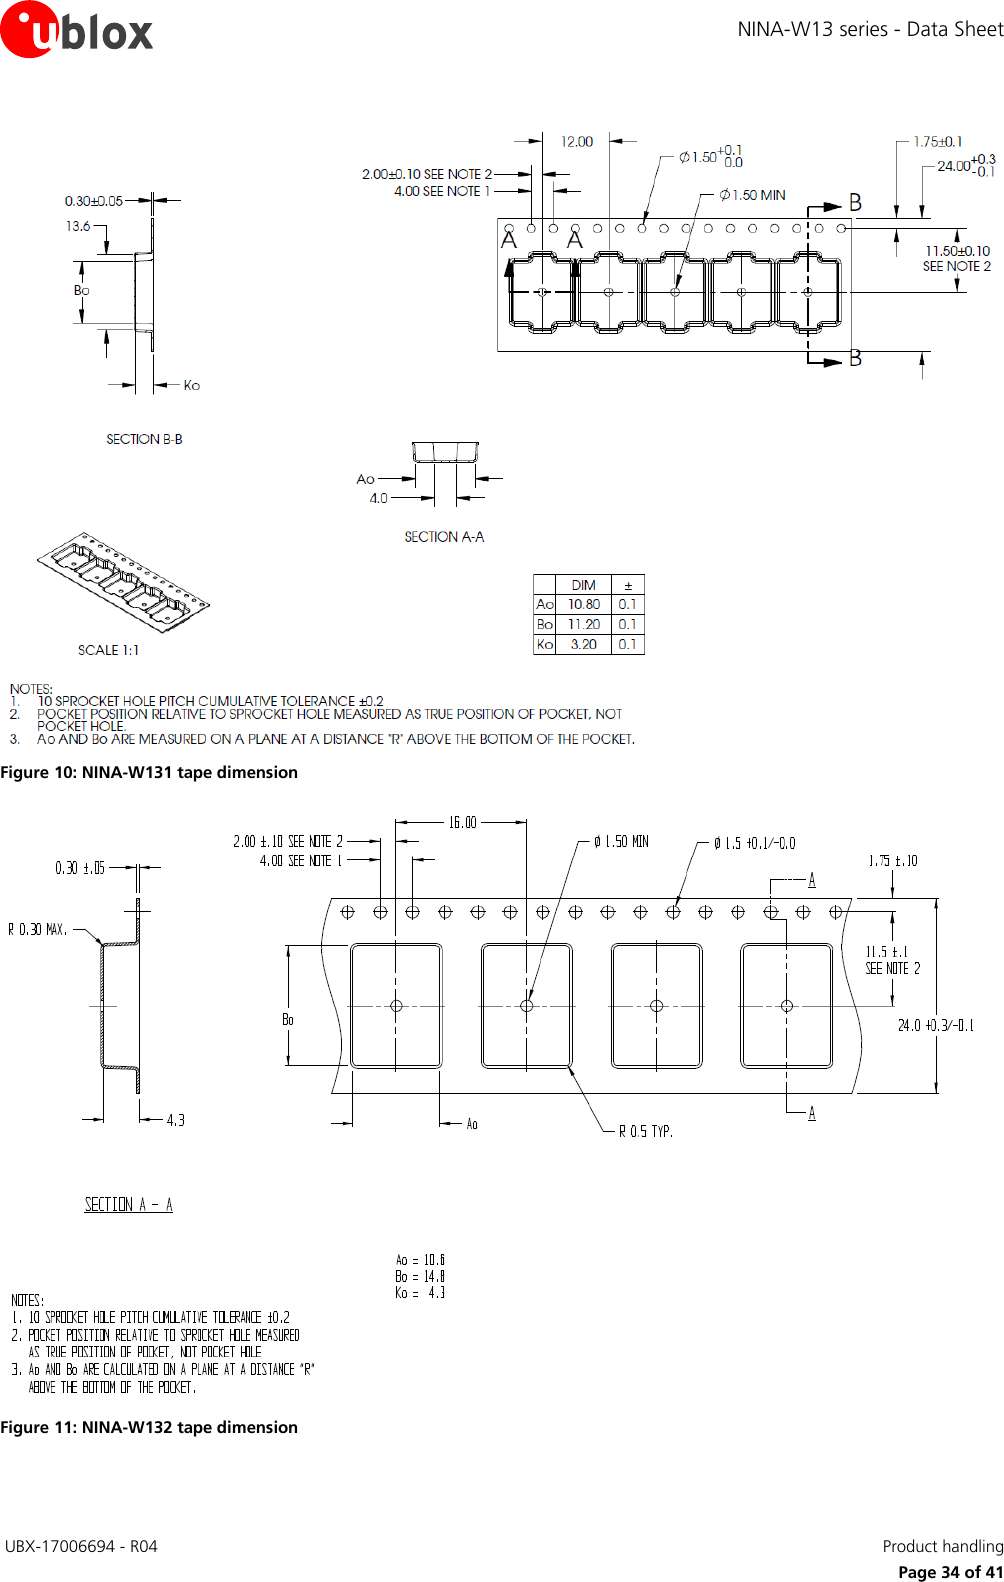 Page 34 of u blox NINAW13 Wireless Communication System Module User Manual NINA W13 series